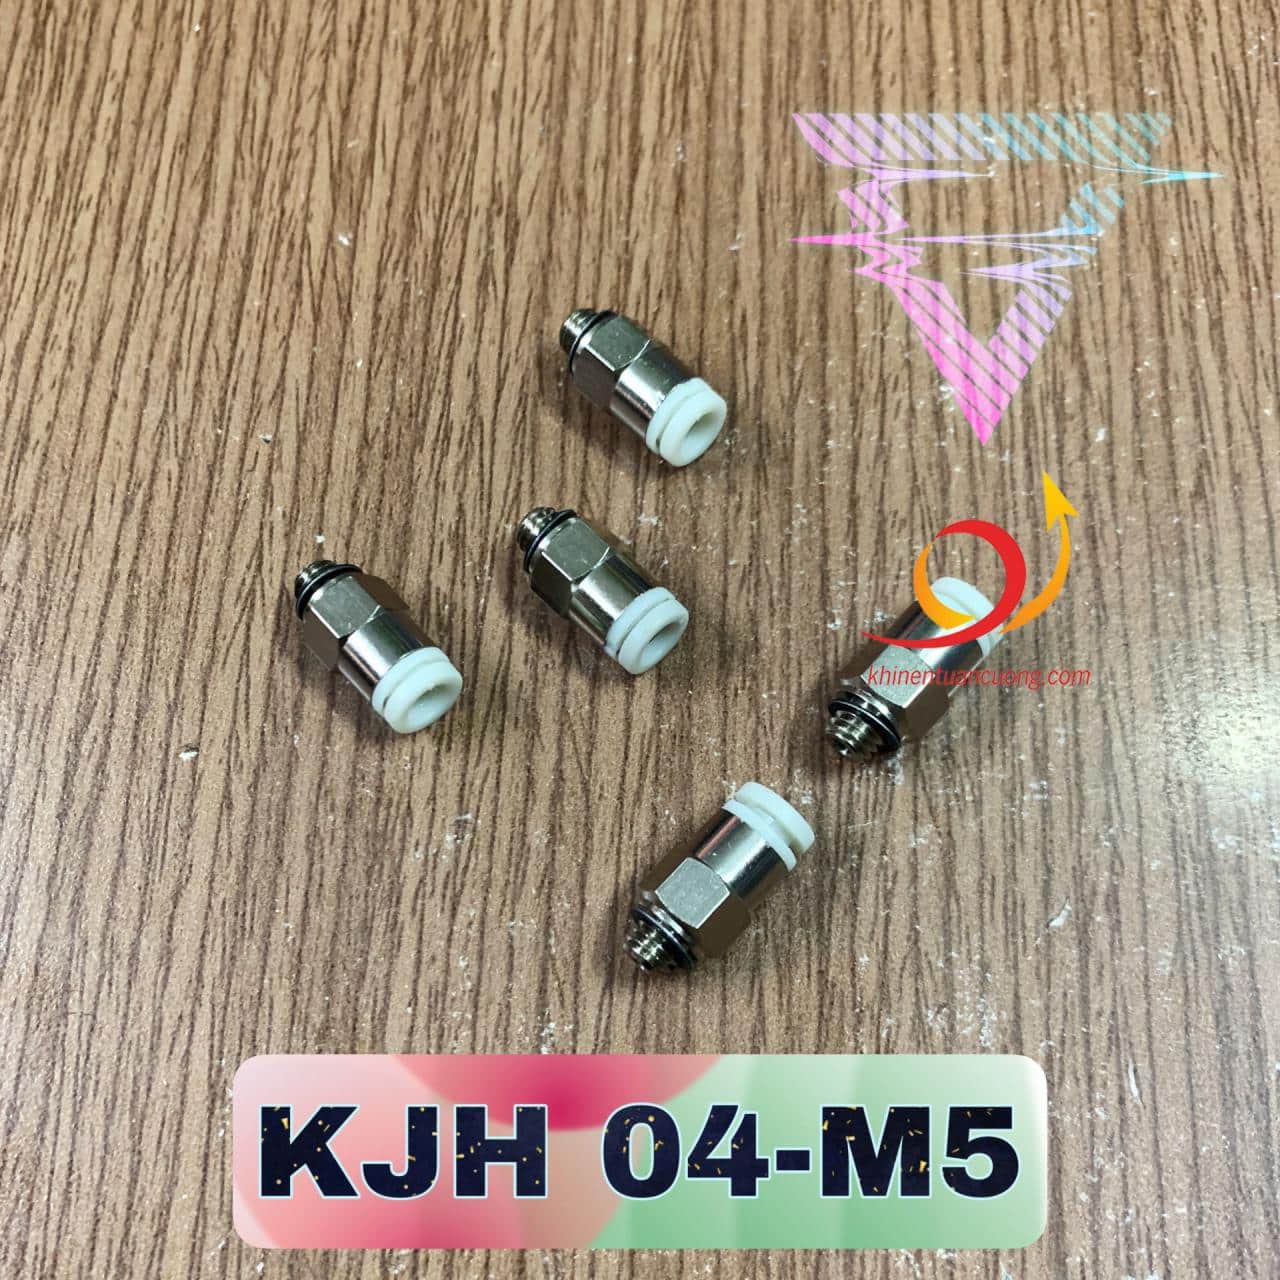 KJH04-M5 là chiếc cút nối ren thẳng được sản xuất theo kích thước của hãng SMC với phần thân thu nhỏ hơn hẳn trong với dòng PC4-M5 để có thể đưa vào những chiếc van siêu nhỏ như SY3120-5LZD-M5 hãng SMC